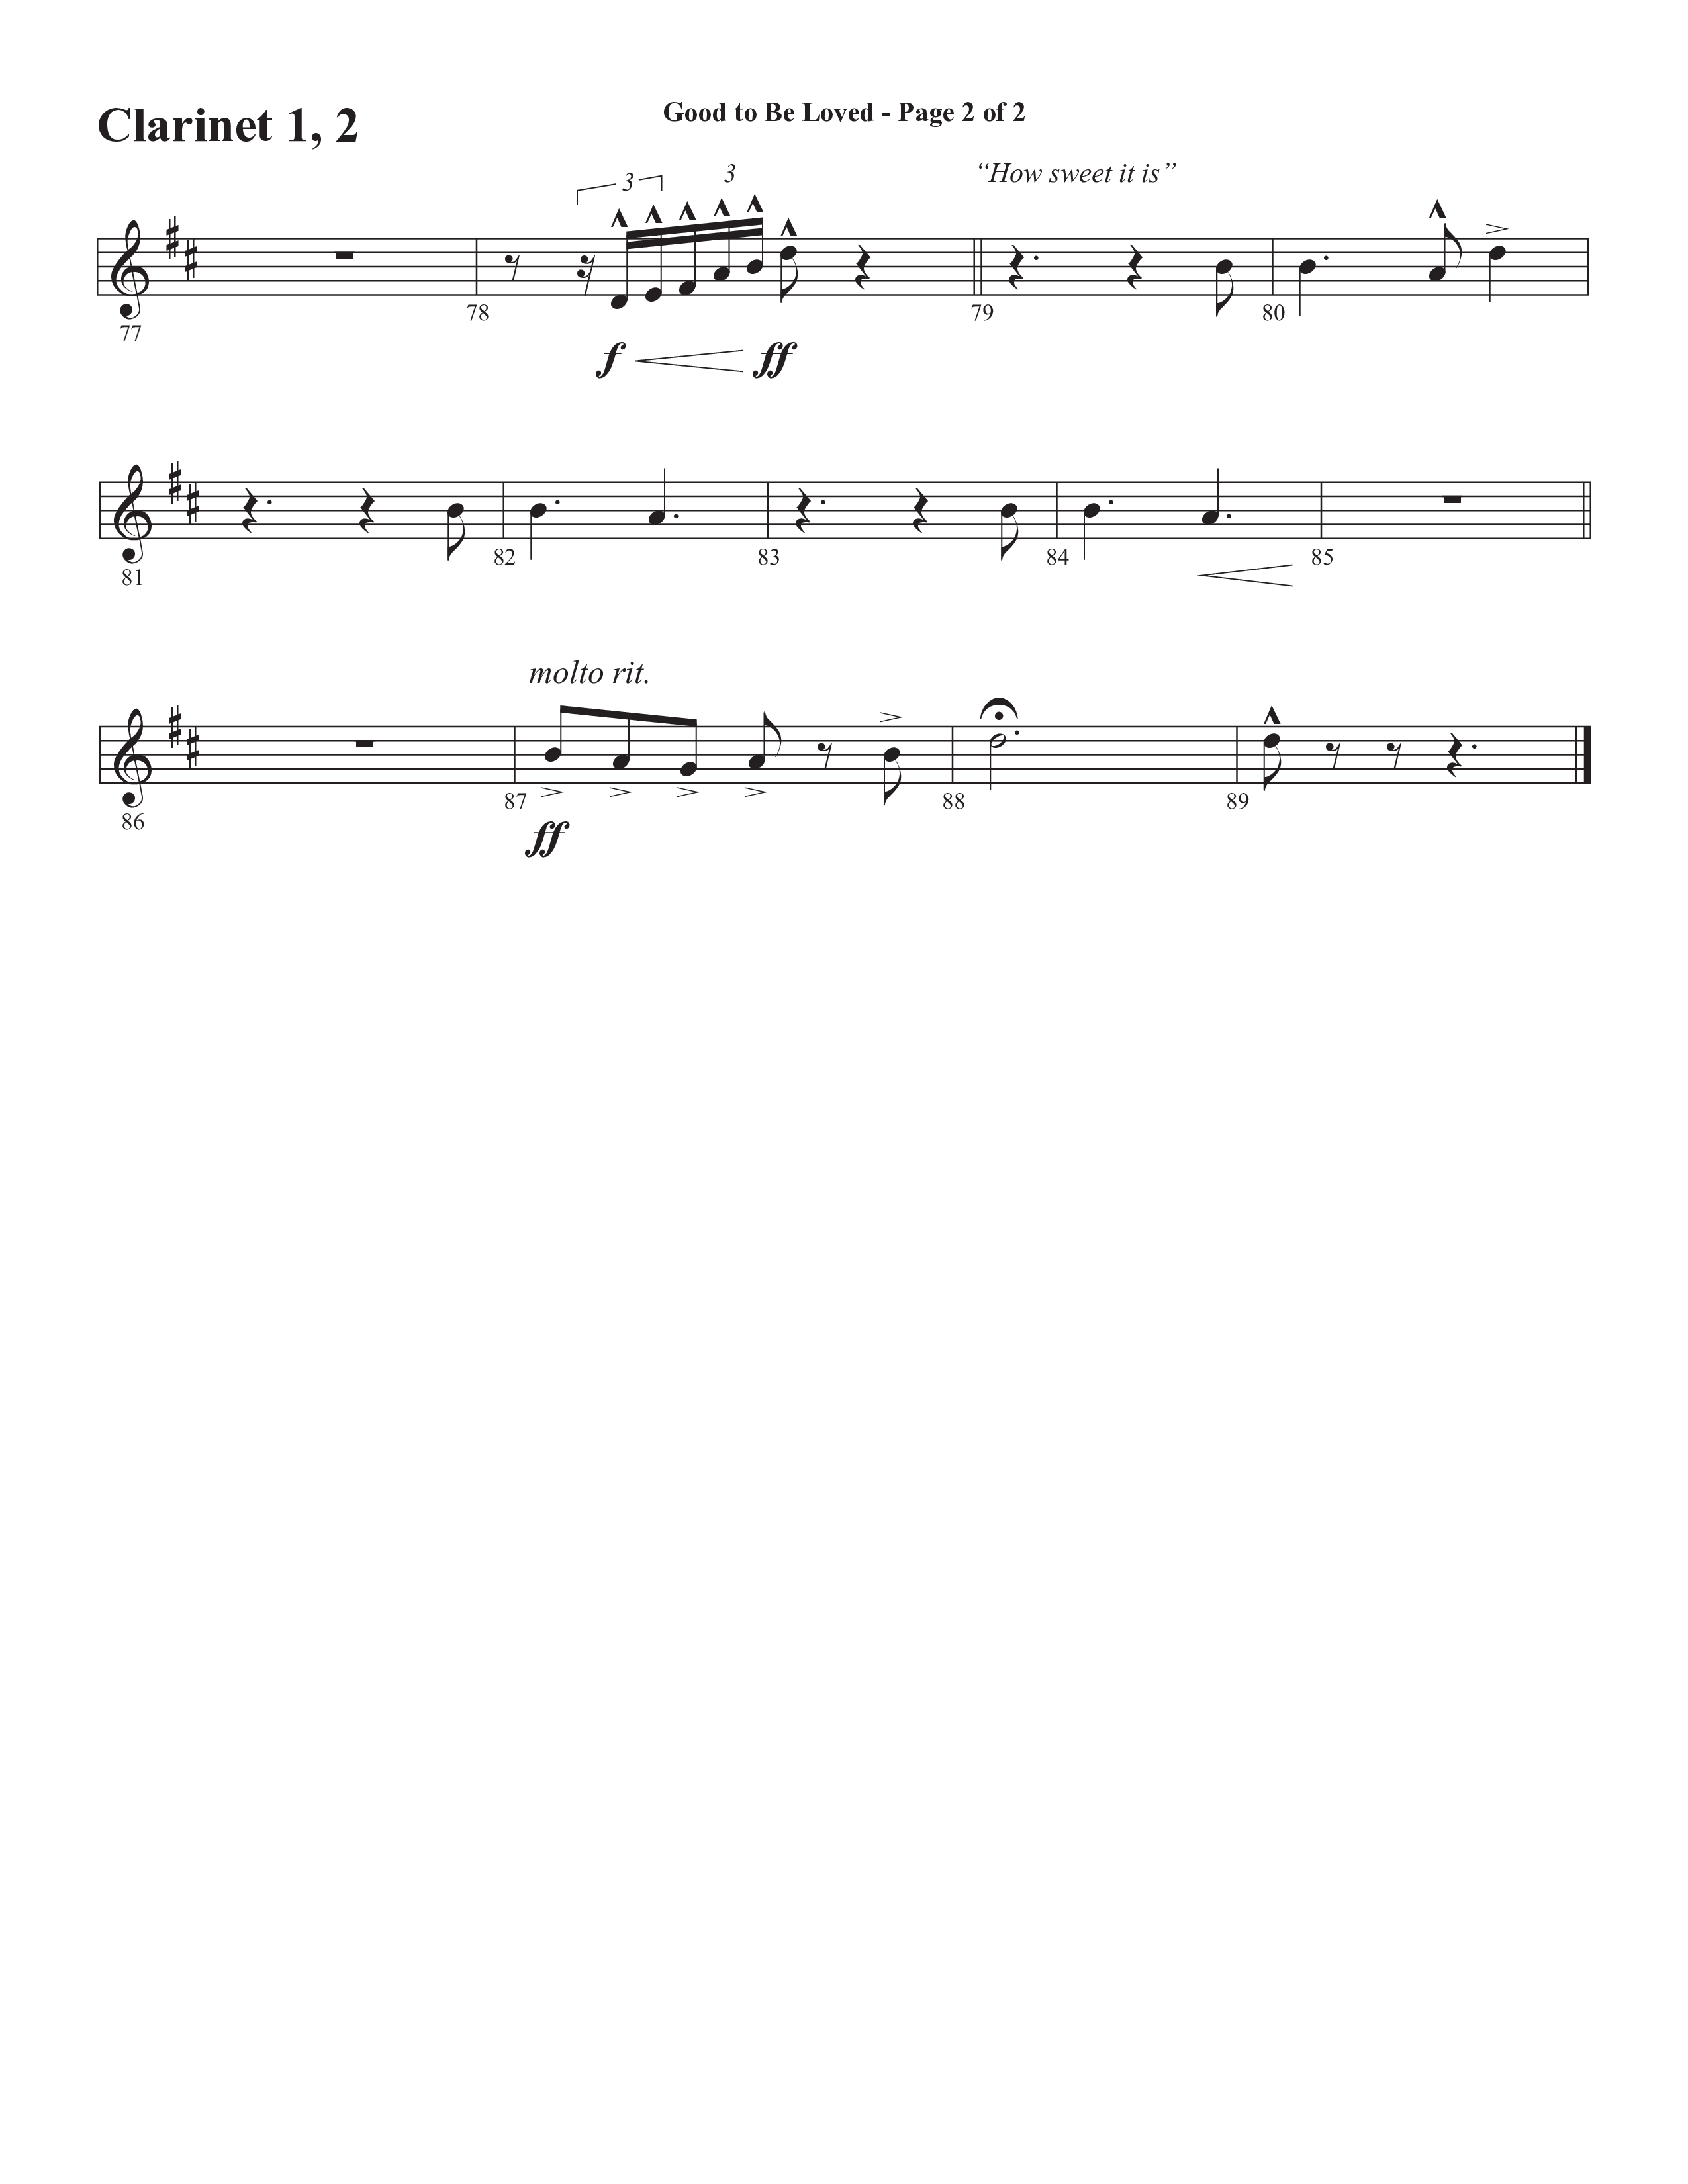 Good To Be Loved (Choral Anthem SATB) Clarinet 1/2 (Semsen Music / Arr. Cliff Duren)